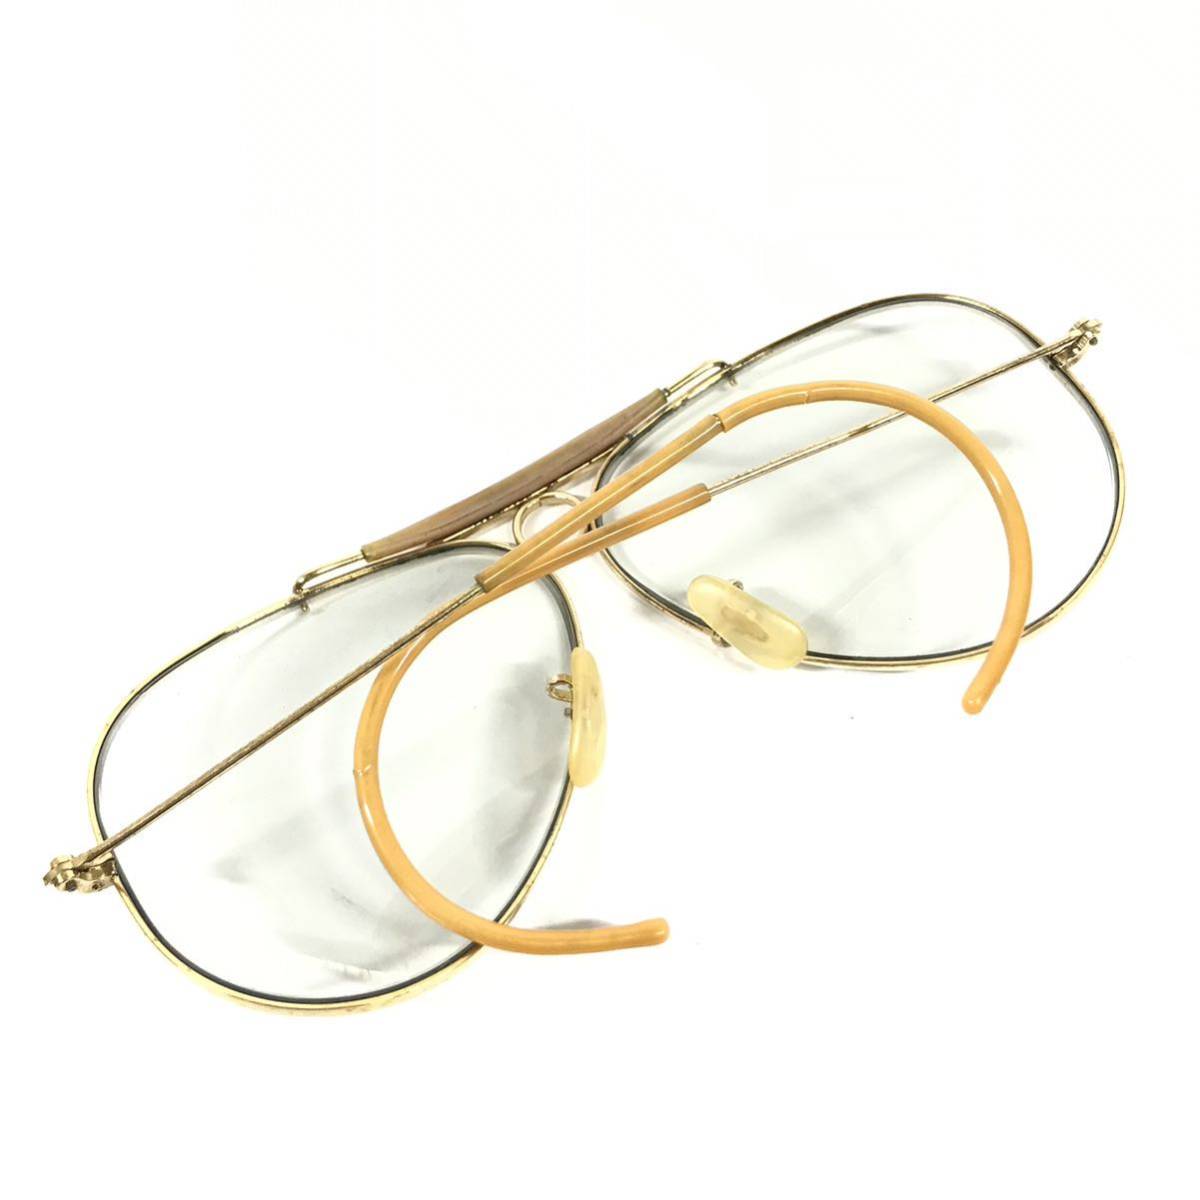 【レイバン】本物 Ray-Ban 伊達眼鏡 B&L ティアドロップ型 アビエーター型 サングラス メガネ めがね メンズ レディース USA製 送料520円_画像4